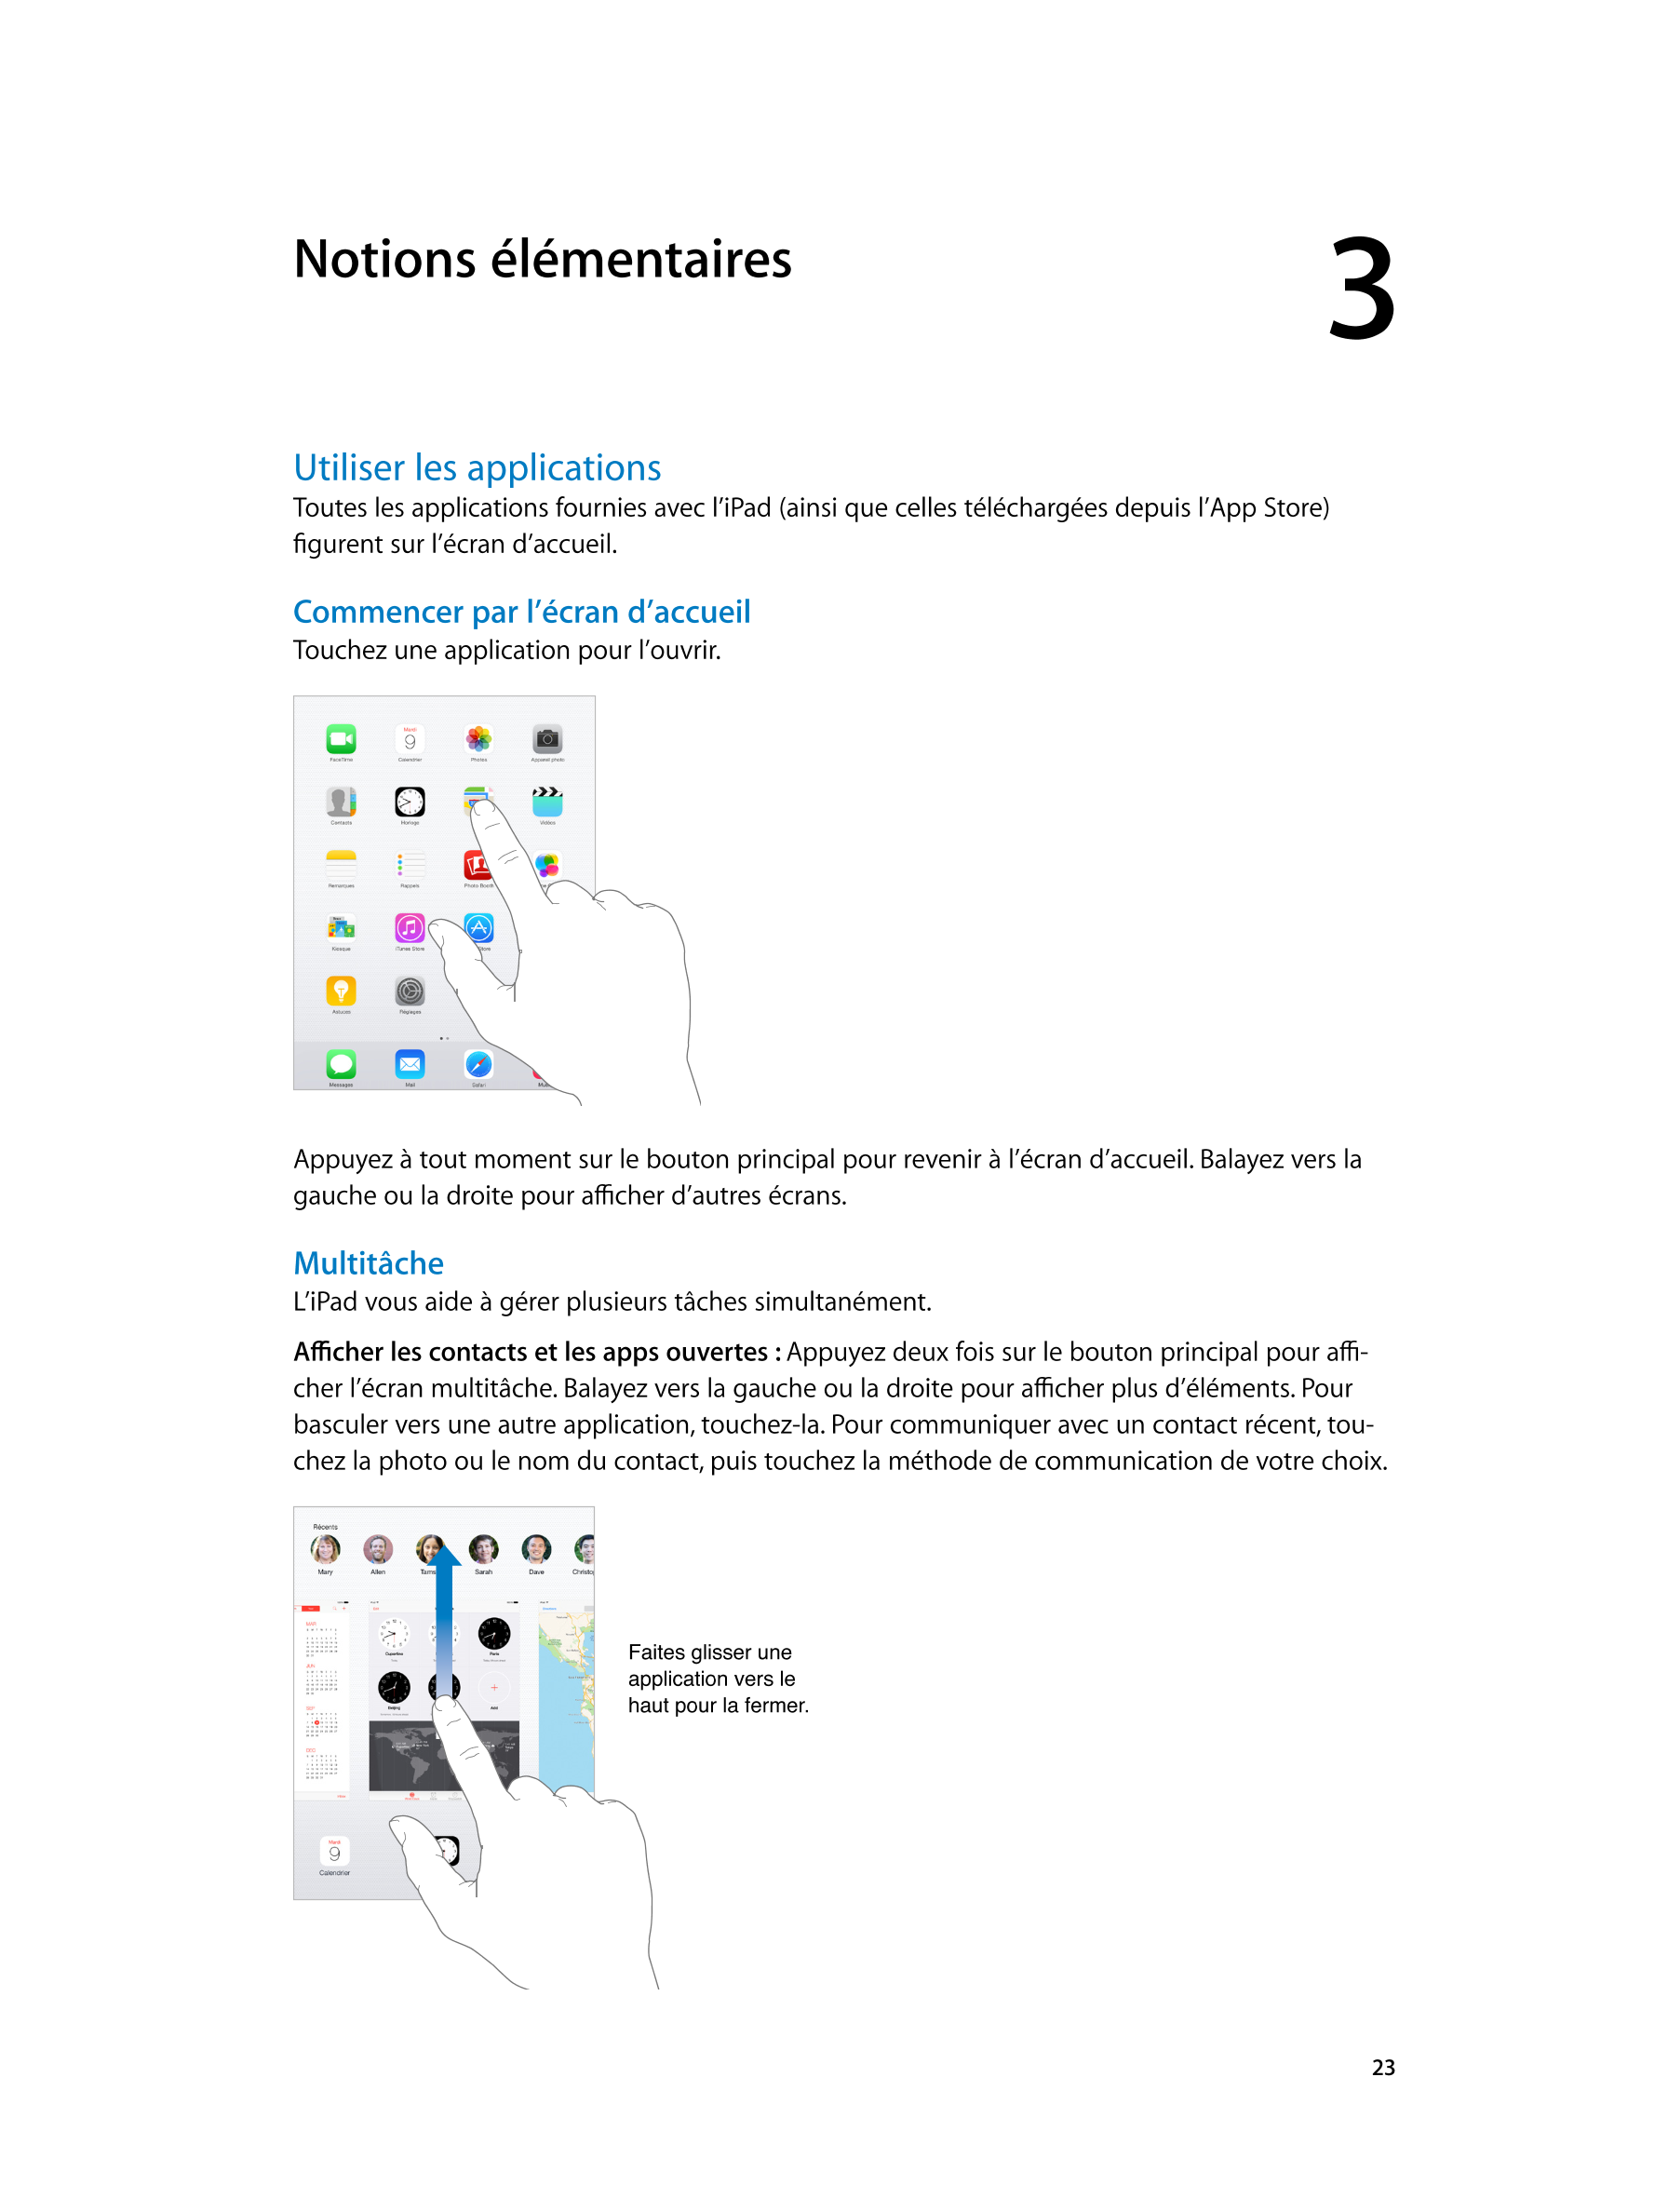  Notions élémentaires 3  
Utiliser les applications
Toutes les applications fournies avec l’iPad (ainsi que celles téléchargées 